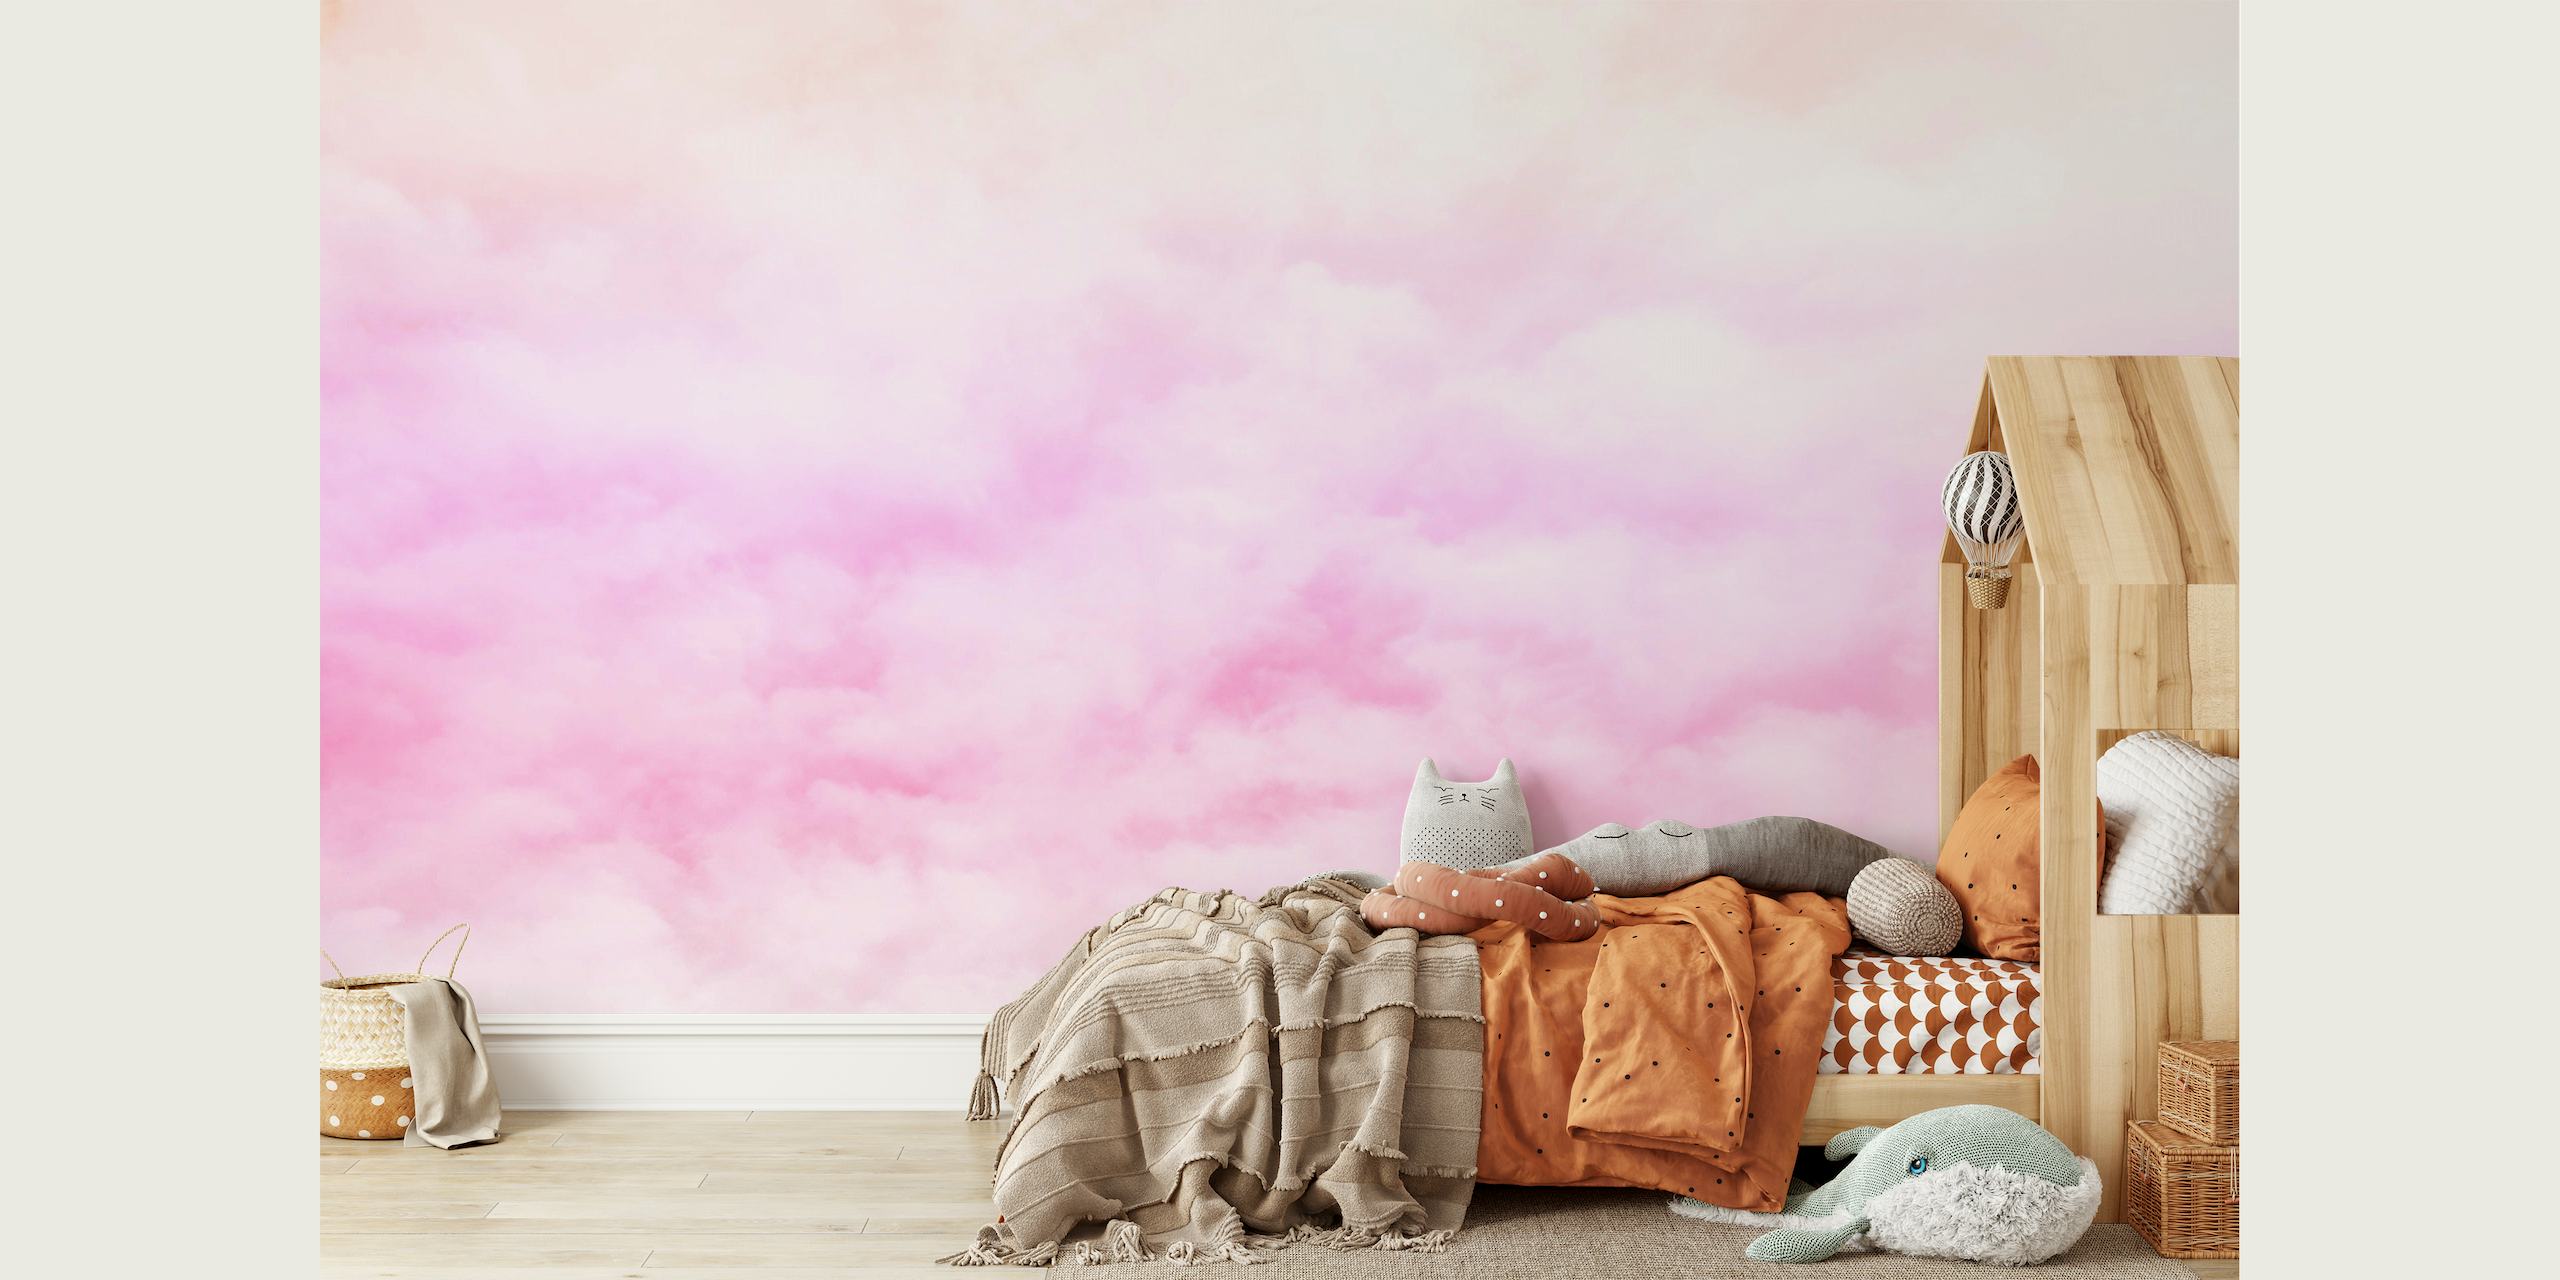 Mural sutil de nuvens pastel rosa e branco para uma decoração de parede tranquila